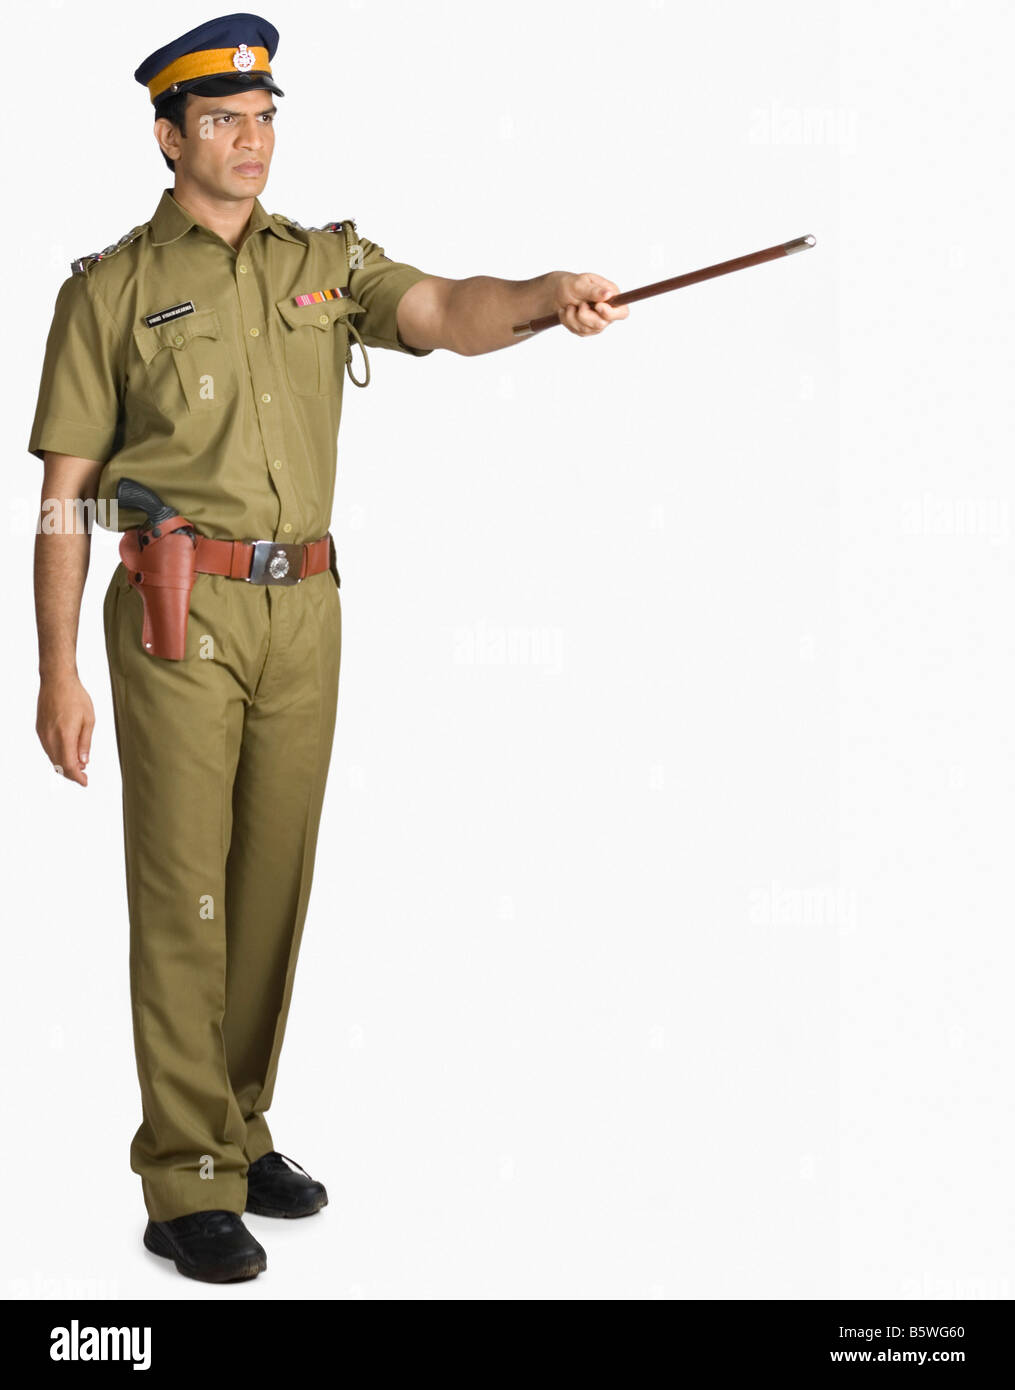 Polizist zeigen nach vorn mit einem Gummiknüppel Stockfoto